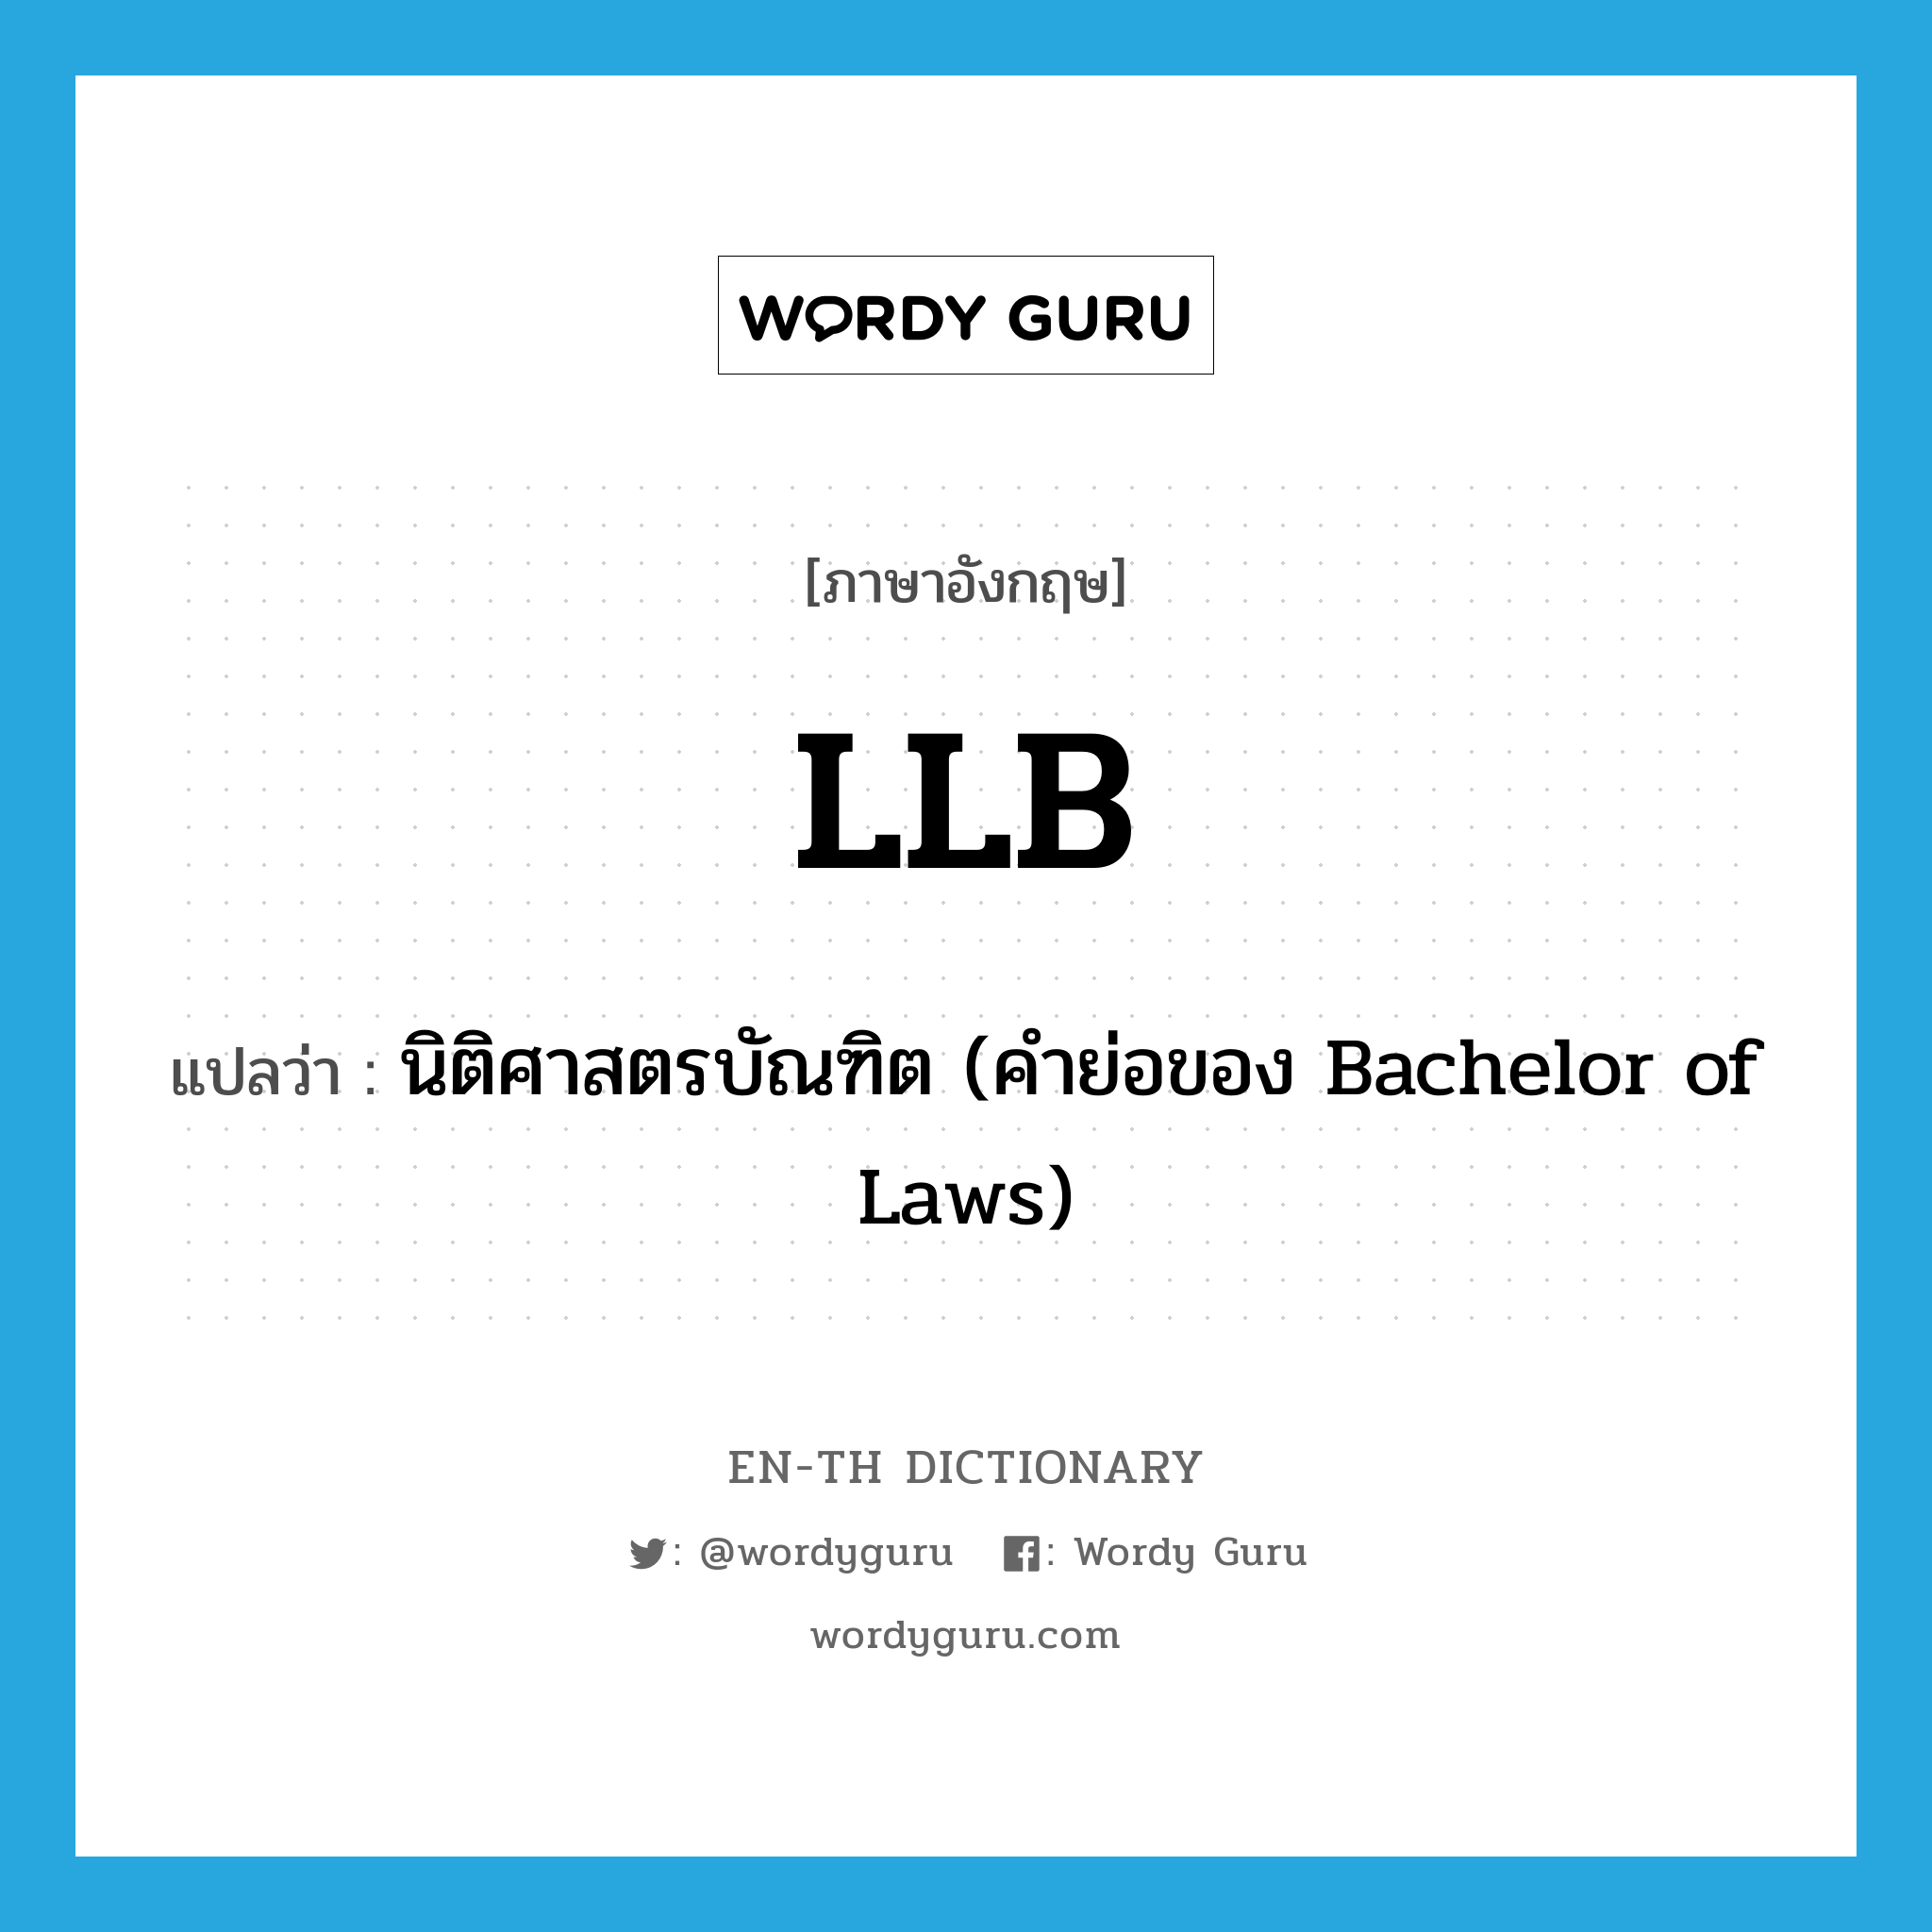 นิติศาสตรบัณฑิต (คำย่อของ Bachelor of Laws) ภาษาอังกฤษ?, คำศัพท์ภาษาอังกฤษ นิติศาสตรบัณฑิต (คำย่อของ Bachelor of Laws) แปลว่า LLB ประเภท ABBR หมวด ABBR